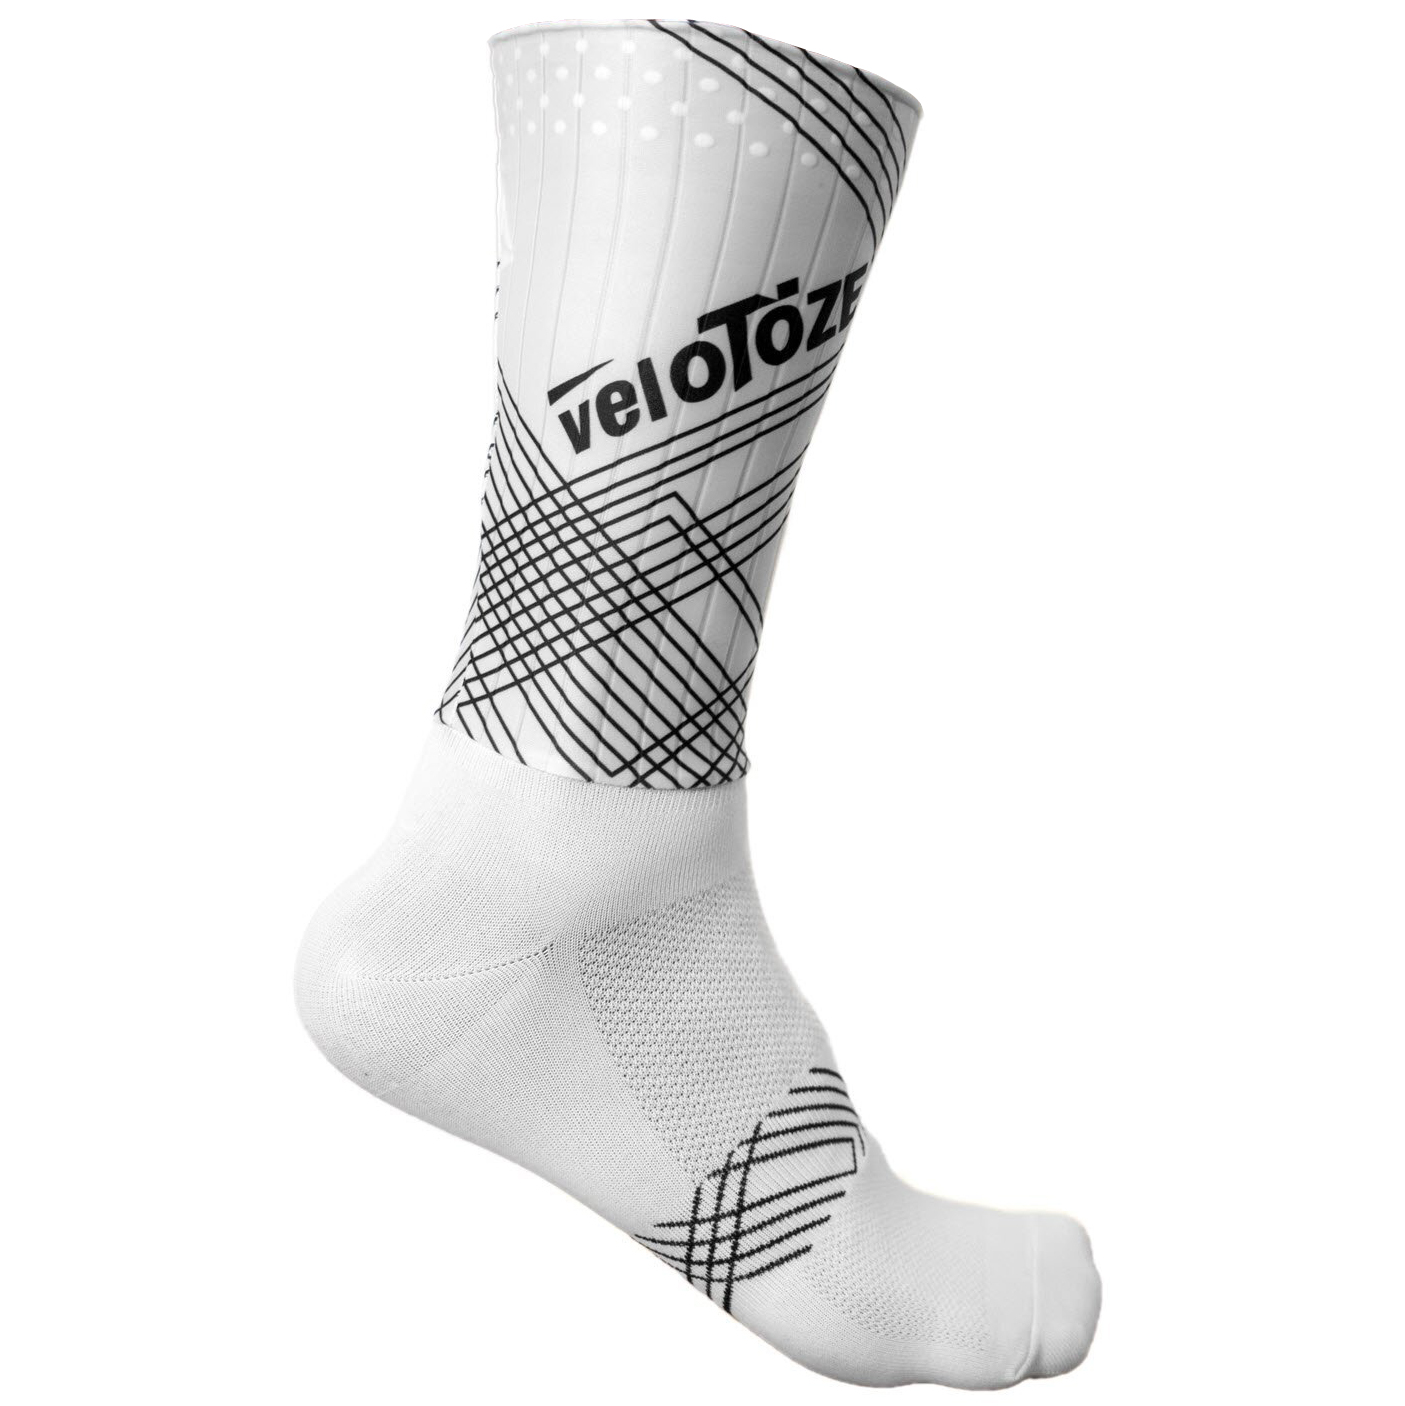 Produktbild von veloToze Aero Socken - weiß